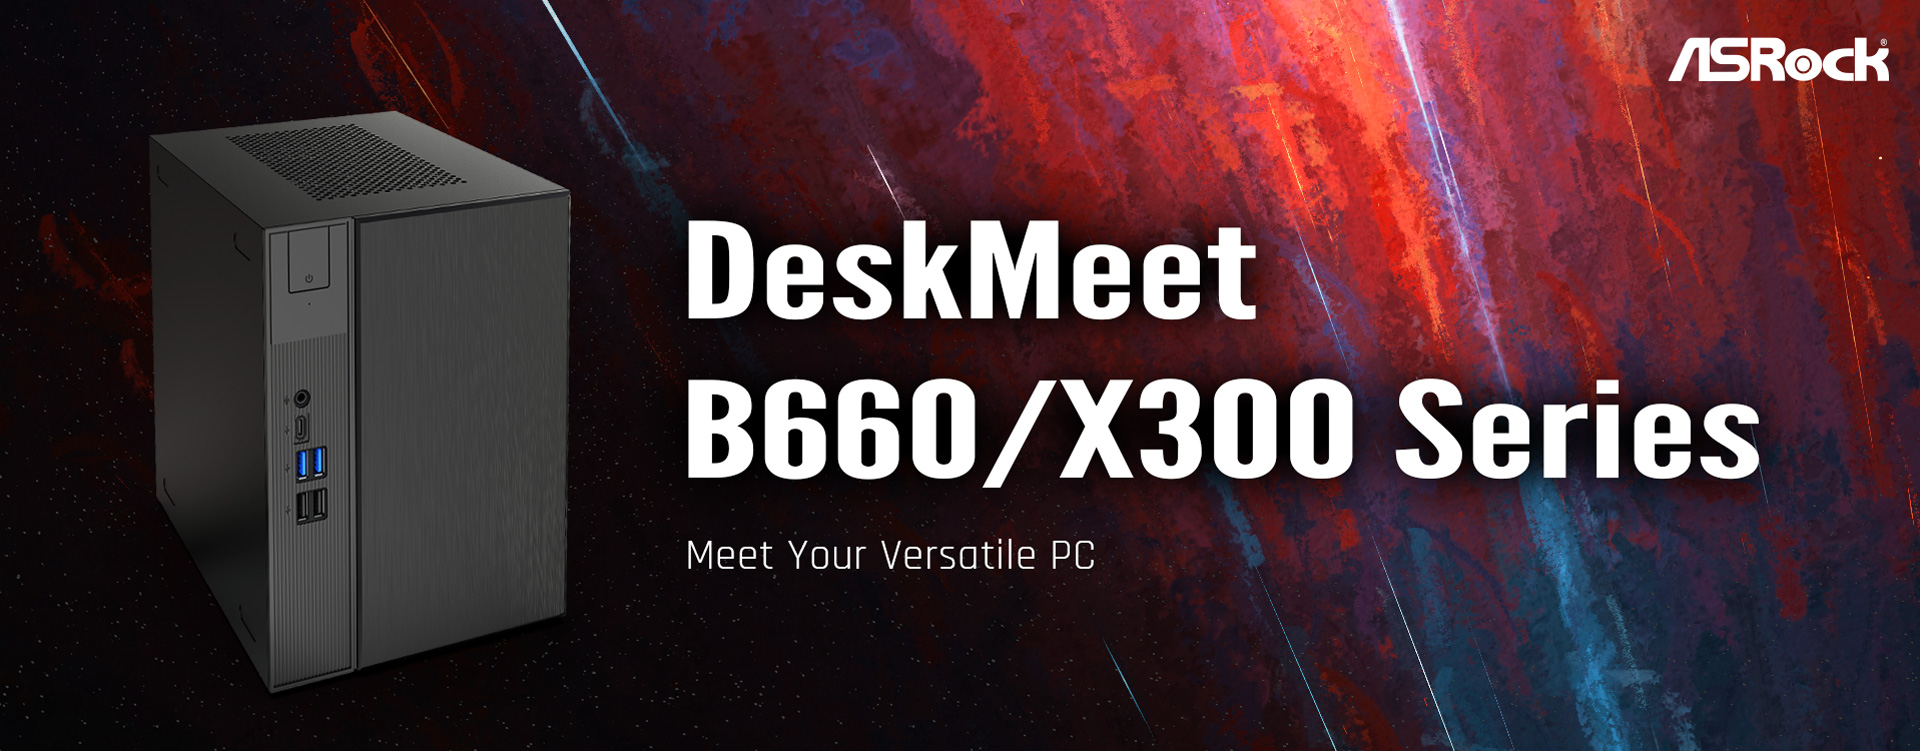 ASRock DeskMeet B660/X300のスペックが判明